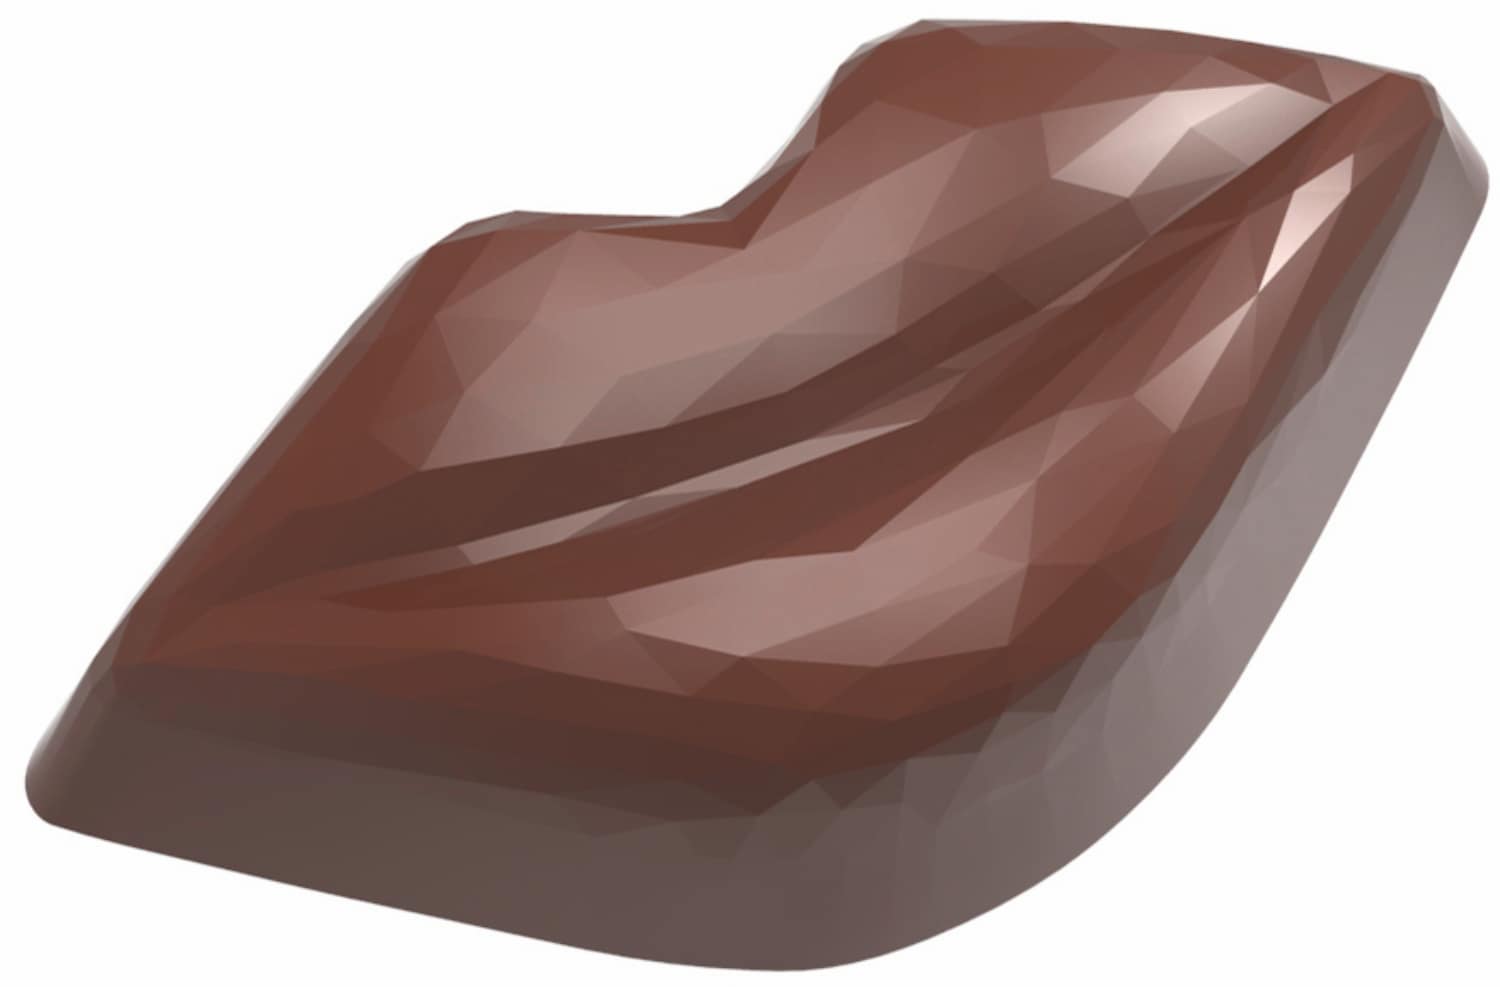 Schokoladenform "Kussmund" 421937